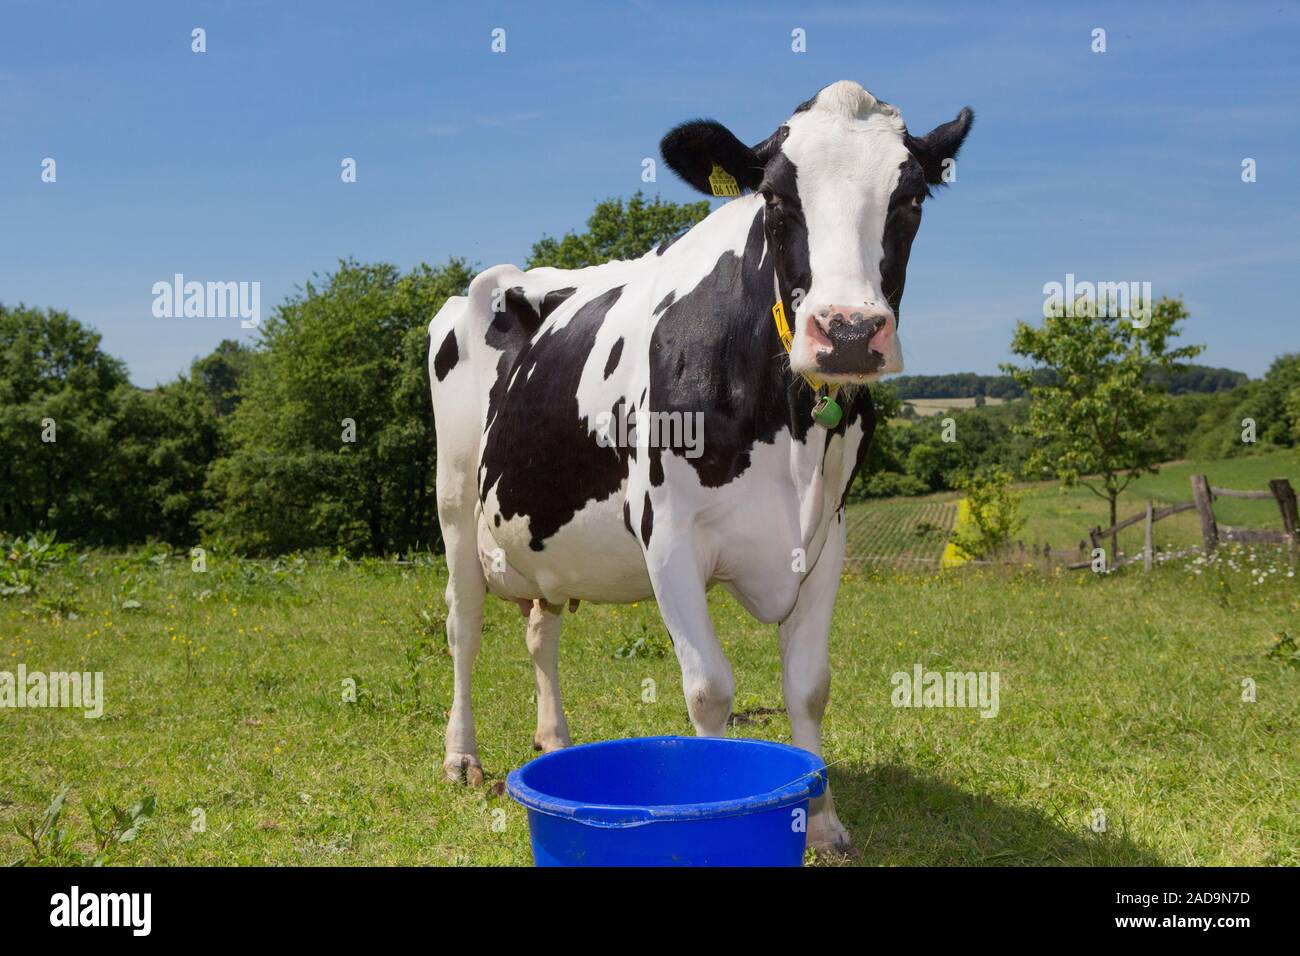 Neri e colorati da vacche da latte, la vacca da latte Foto Stock